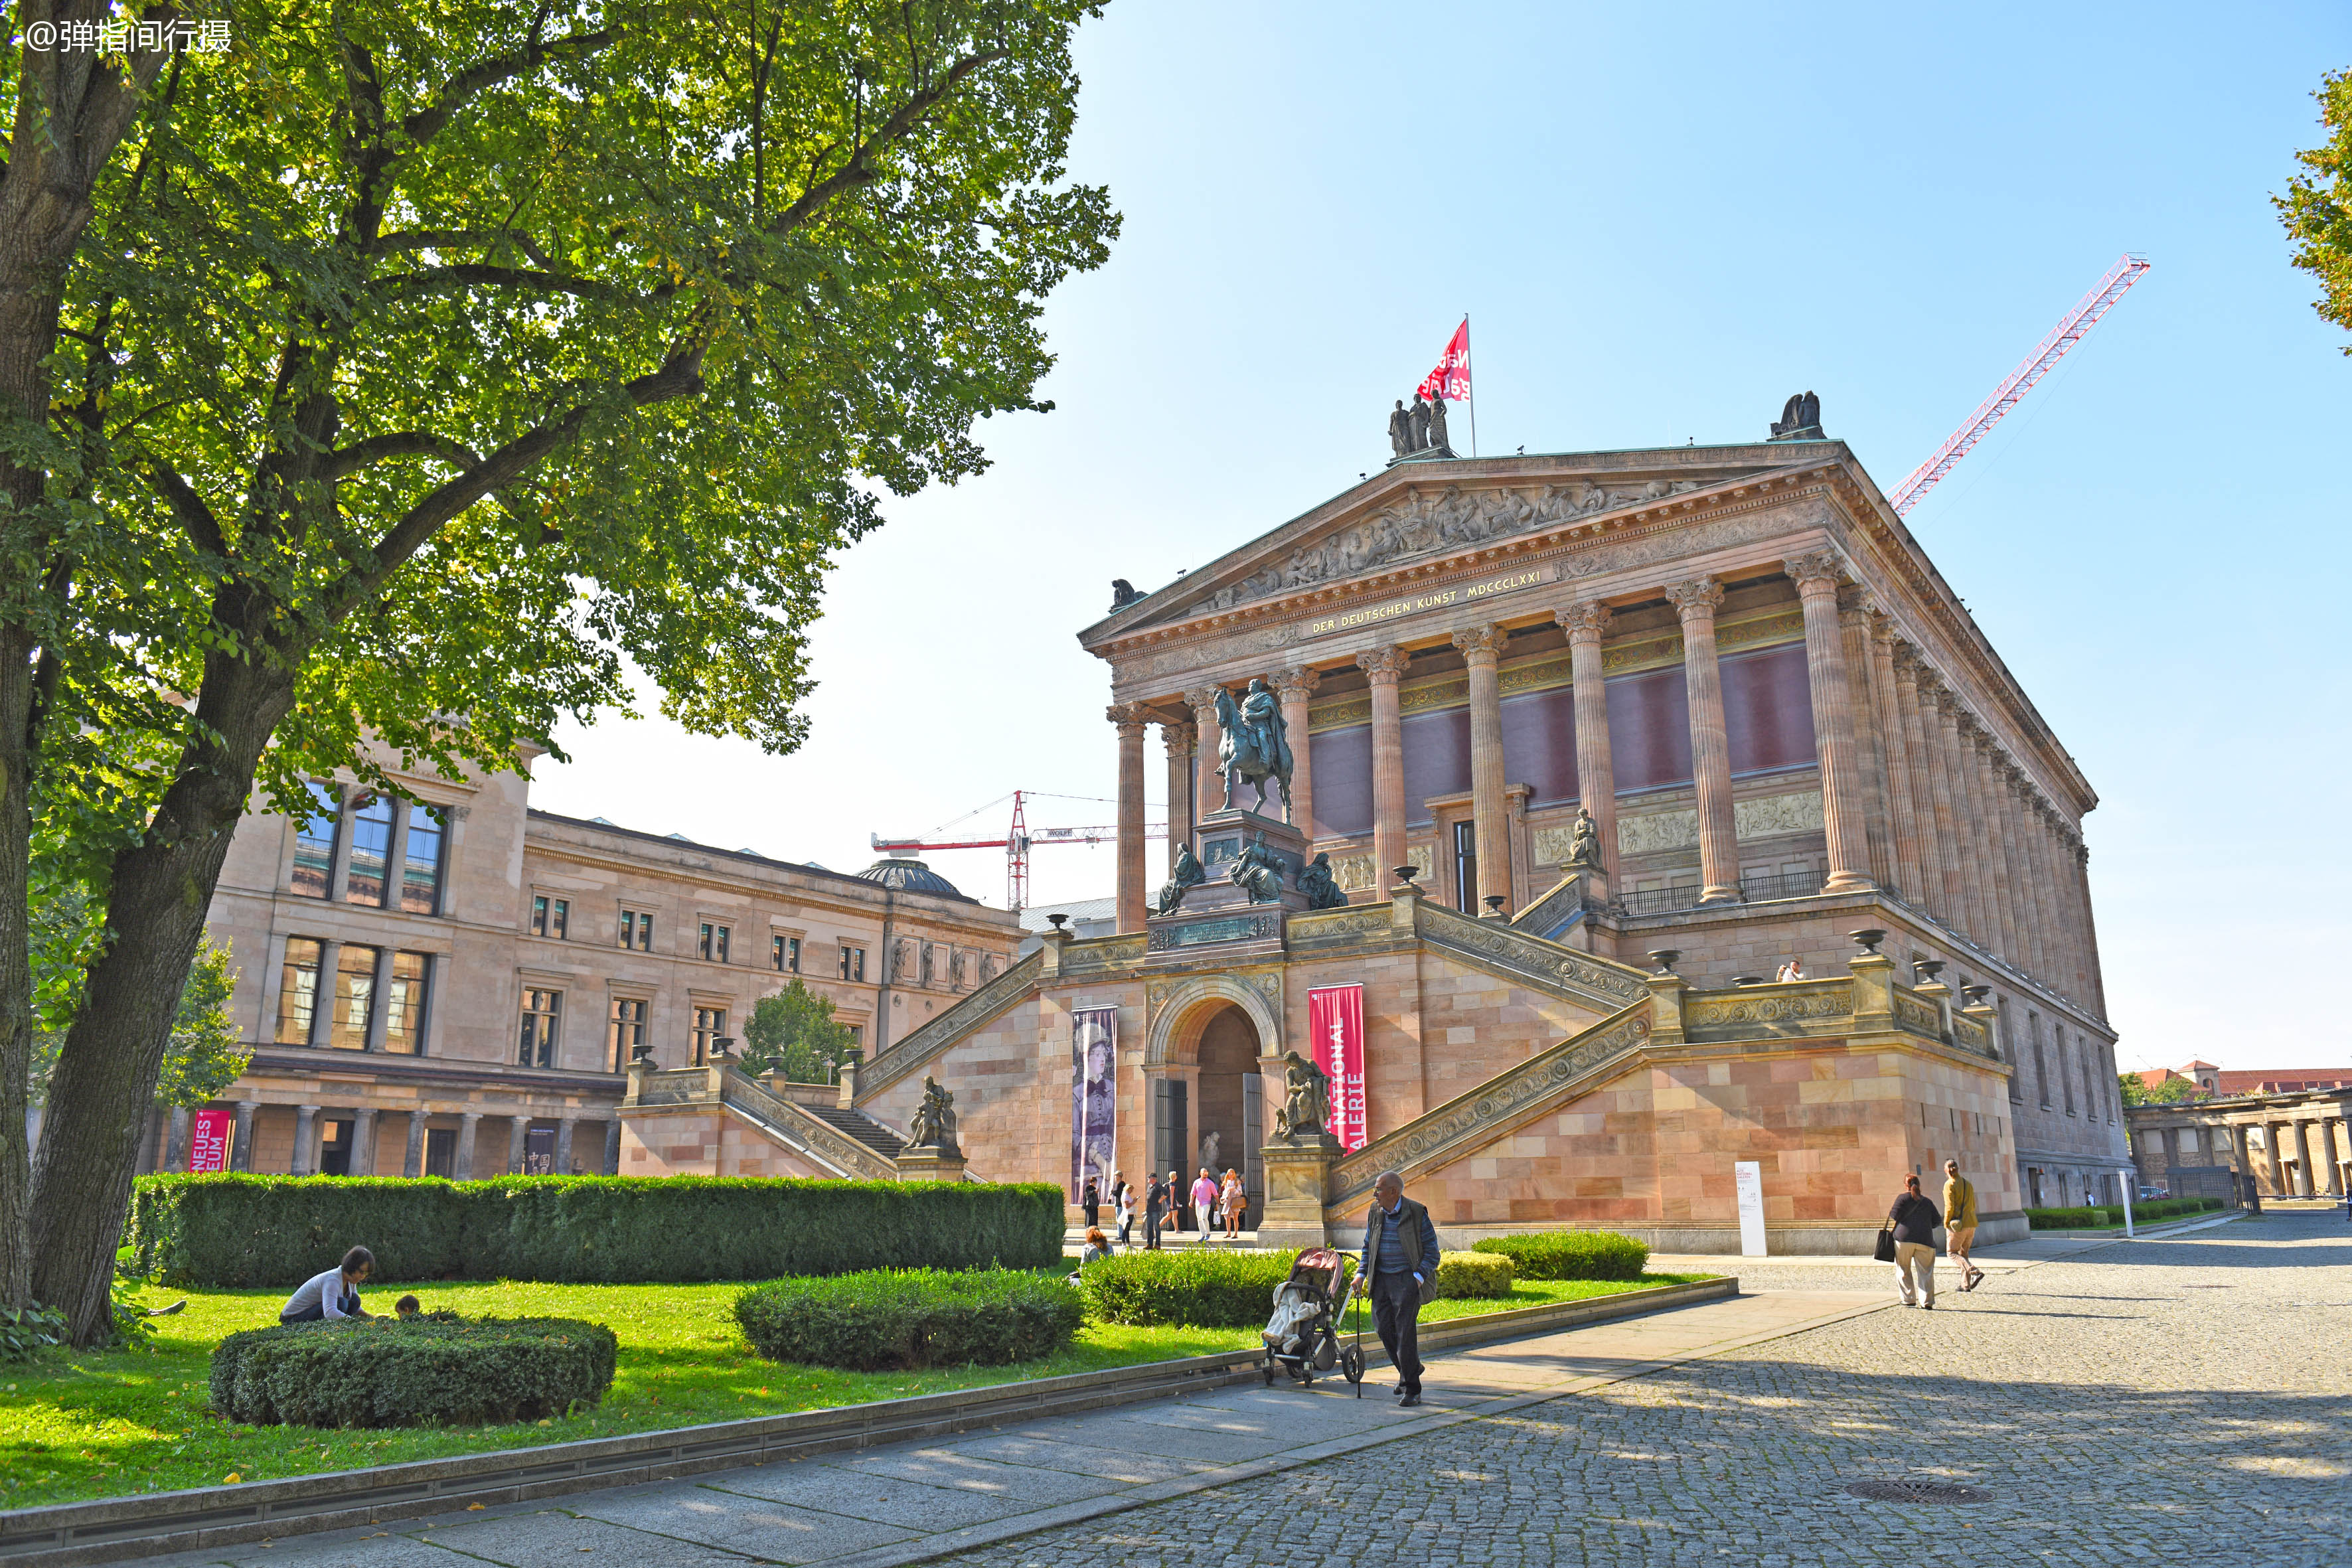 原创德国柏林博物馆岛:1个岛屿汇聚5座博物馆,成为全城最热闹的景点